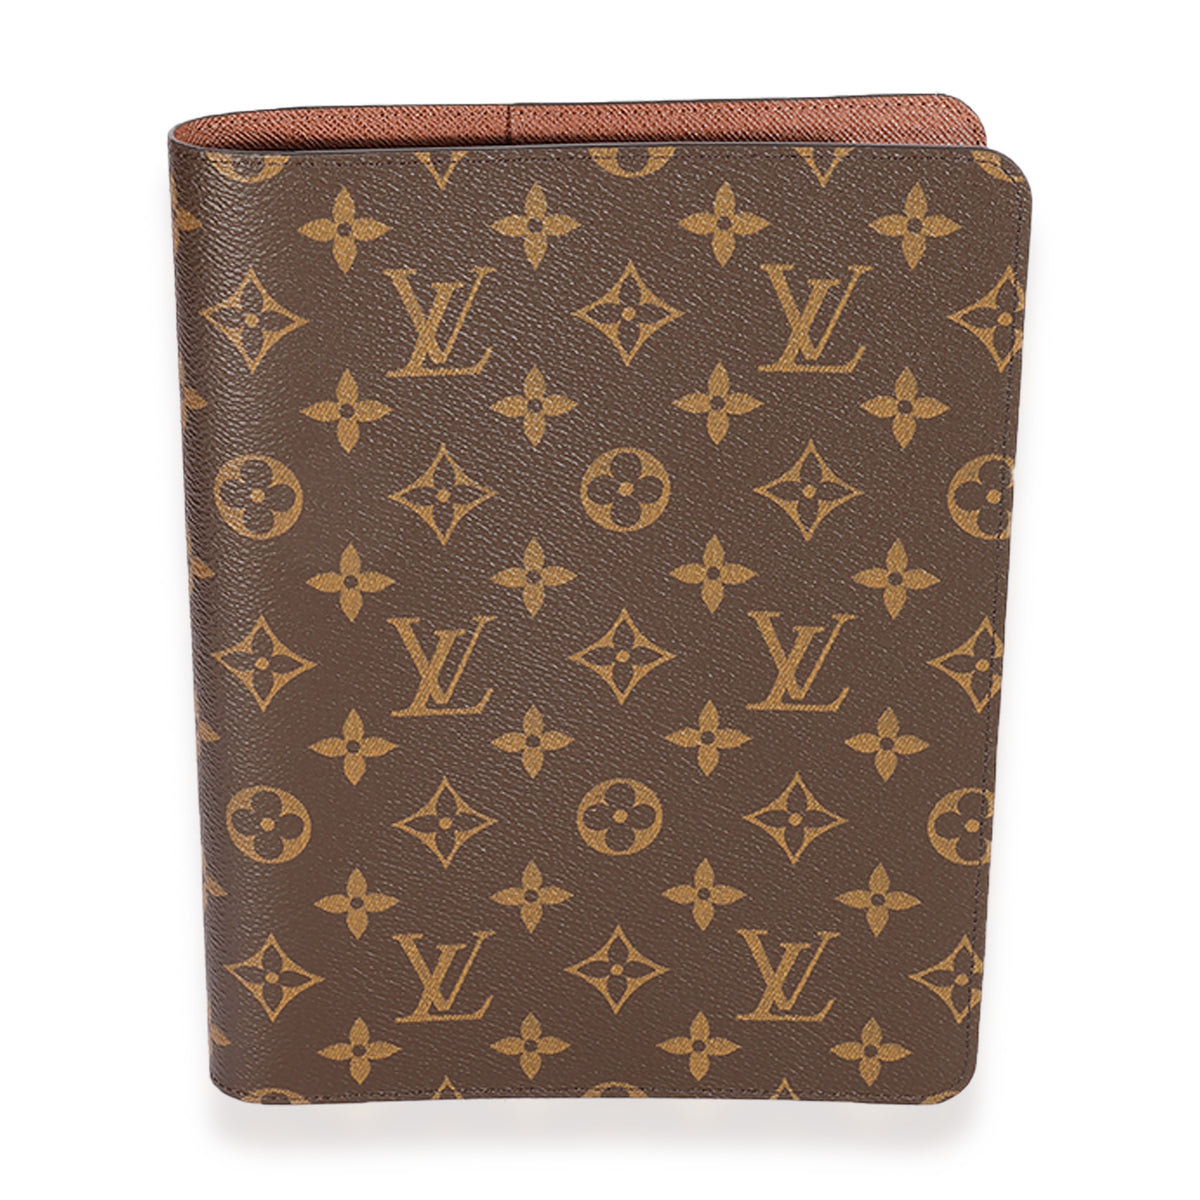 Louis Vuitton Desk agenda in monogram was my first LV agenda. Its purp